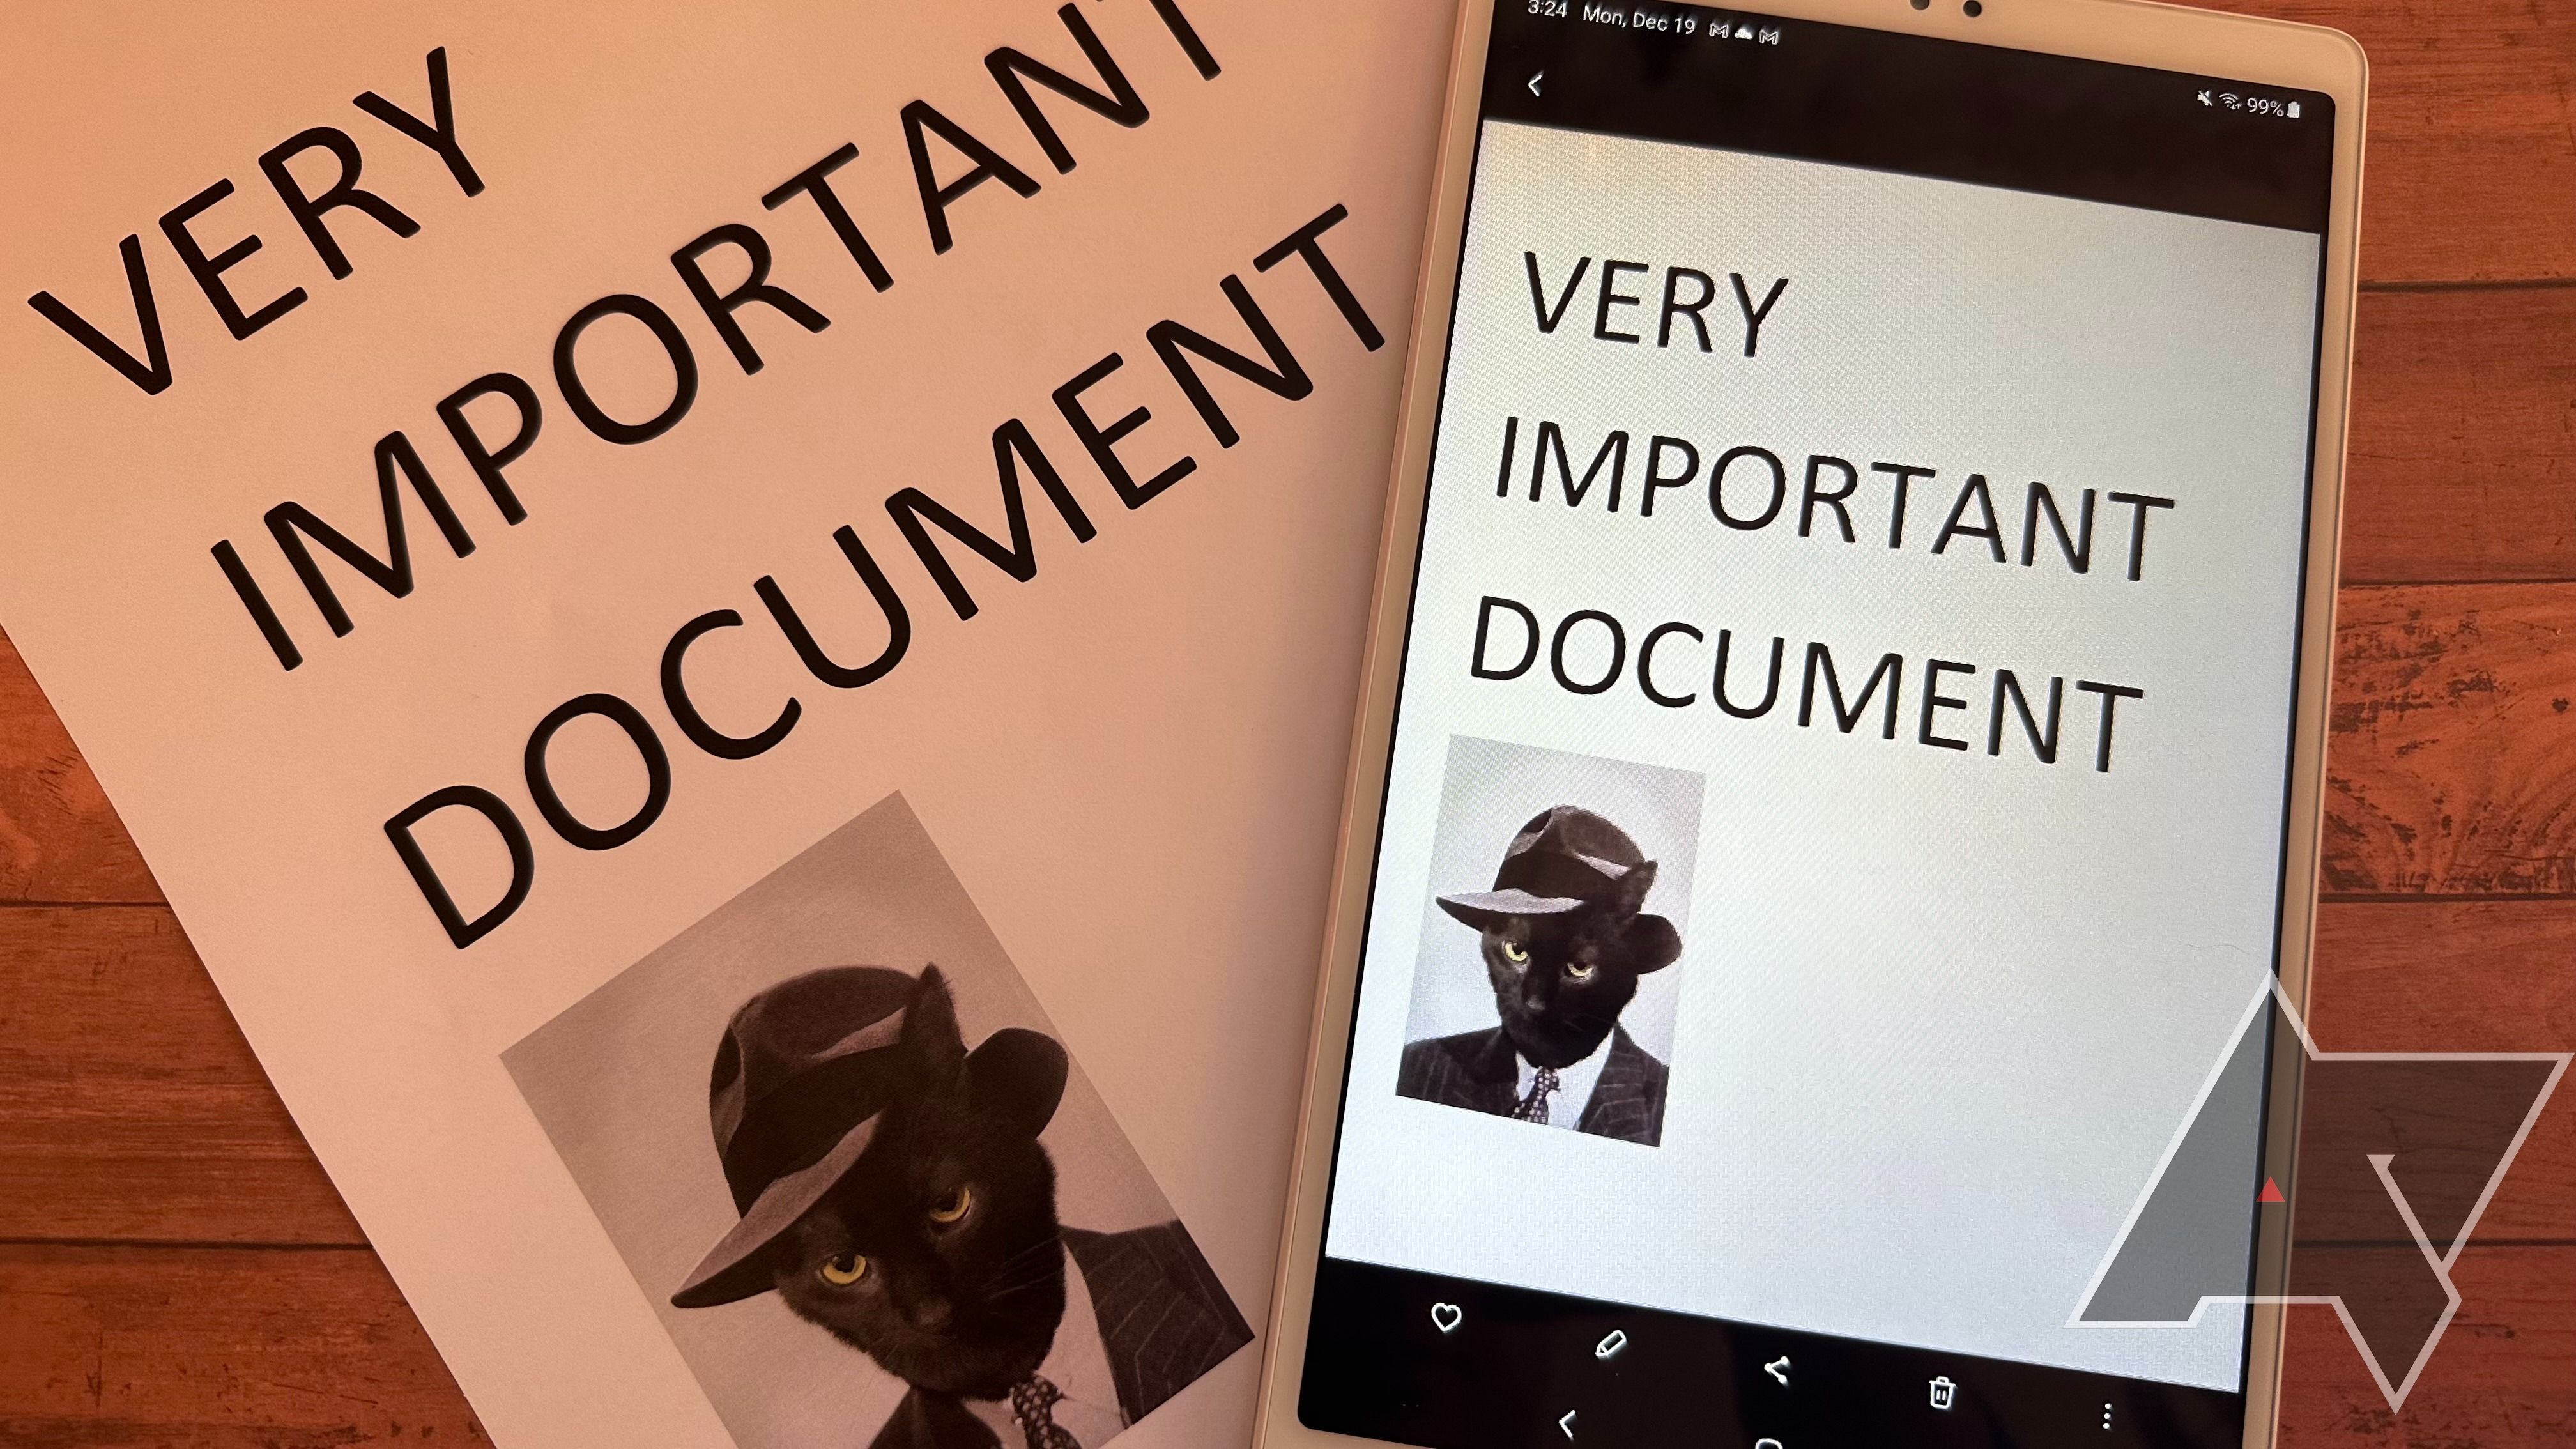 Exemplo de digitalização de documentos no Samsung Galaxy A7 lite